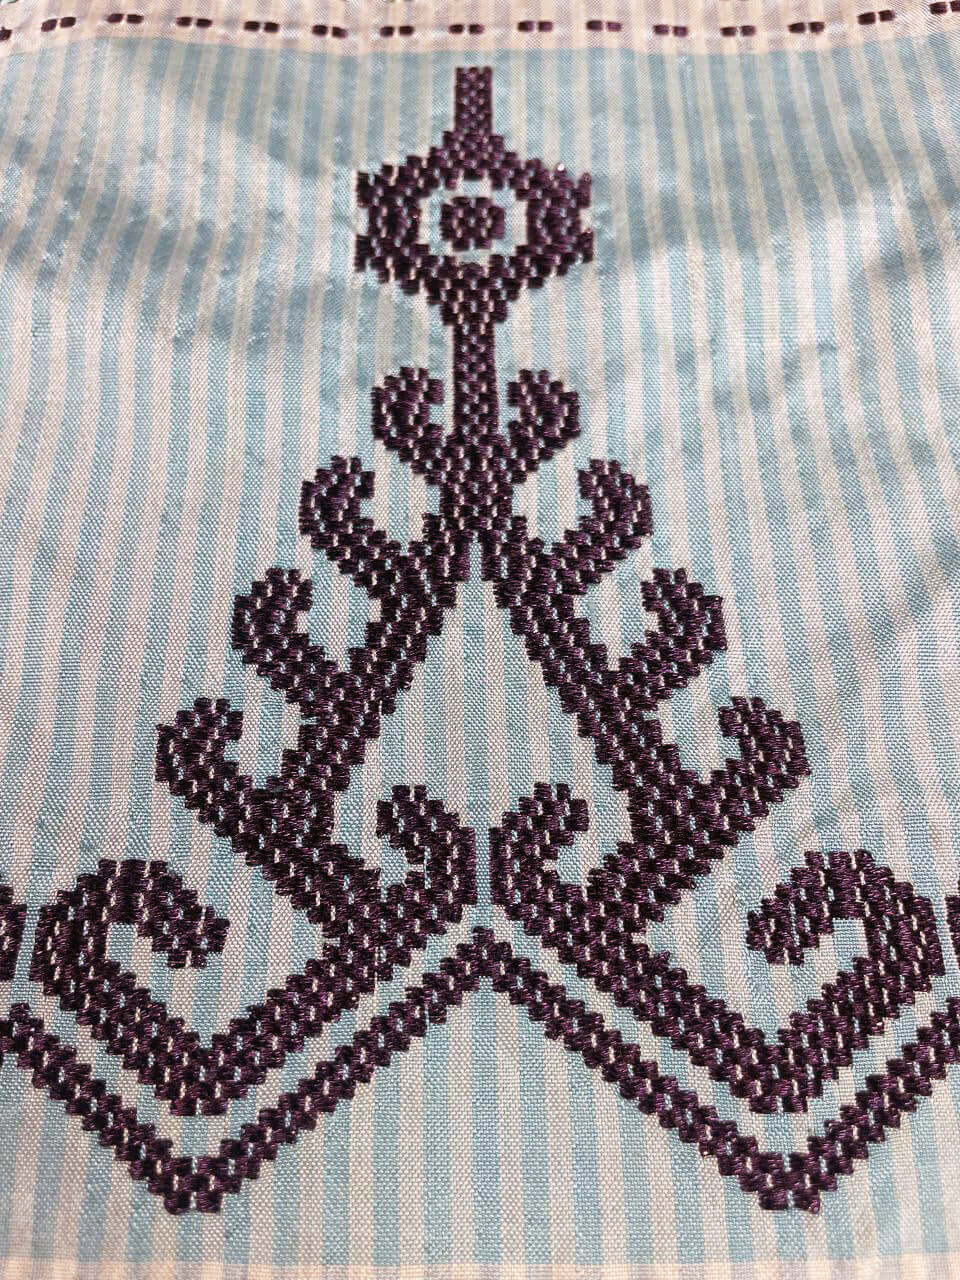 Iban Rebung (Navy) handwoven silk songket shawl textile